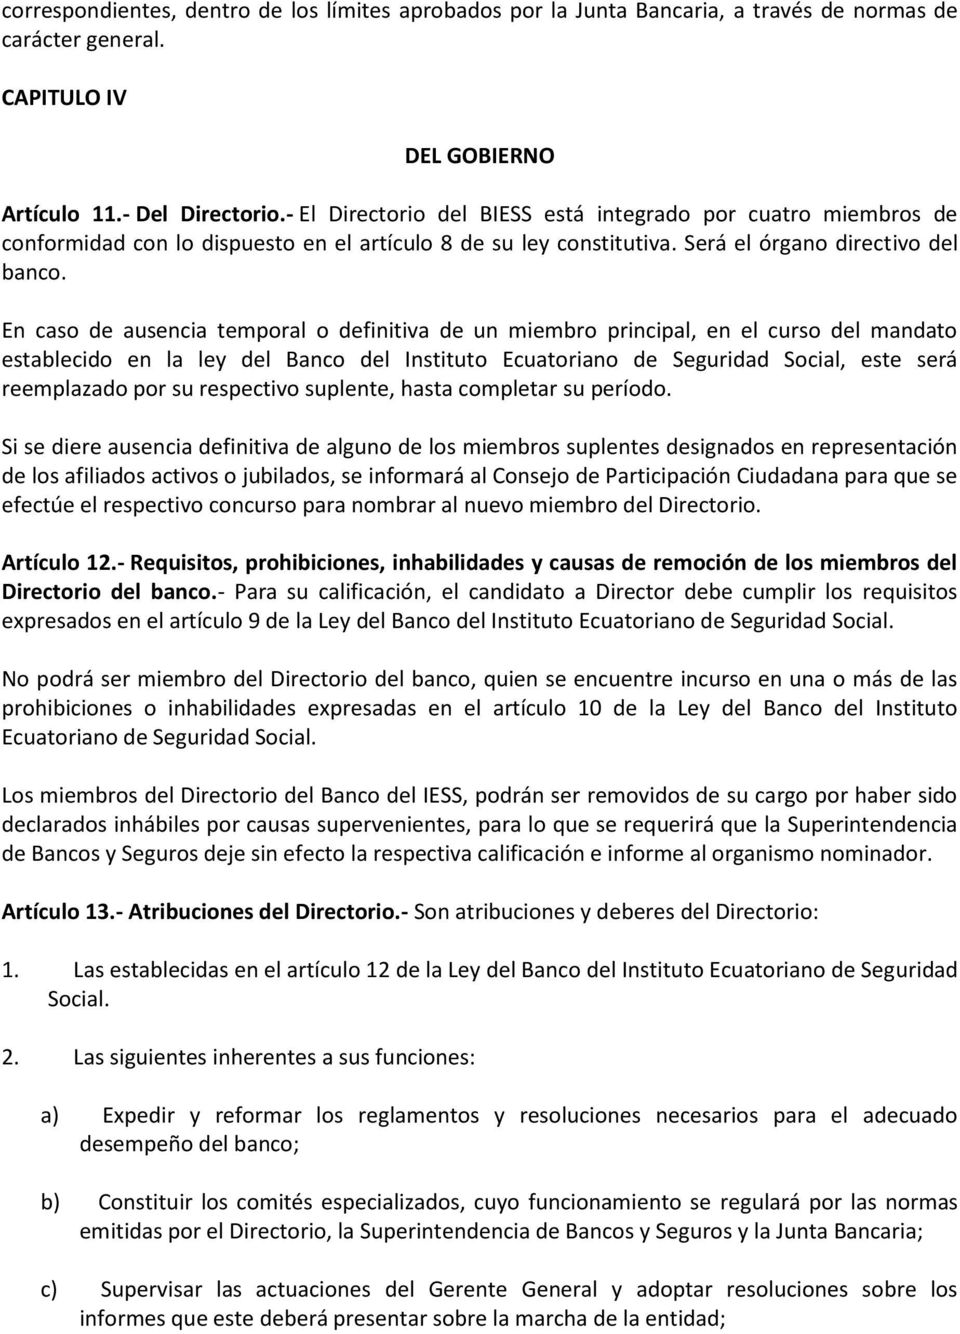 En caso de ausencia temporal o definitiva de un miembro principal, en el curso del mandato establecido en la ley del Banco del Instituto Ecuatoriano de Seguridad Social, este será reemplazado por su